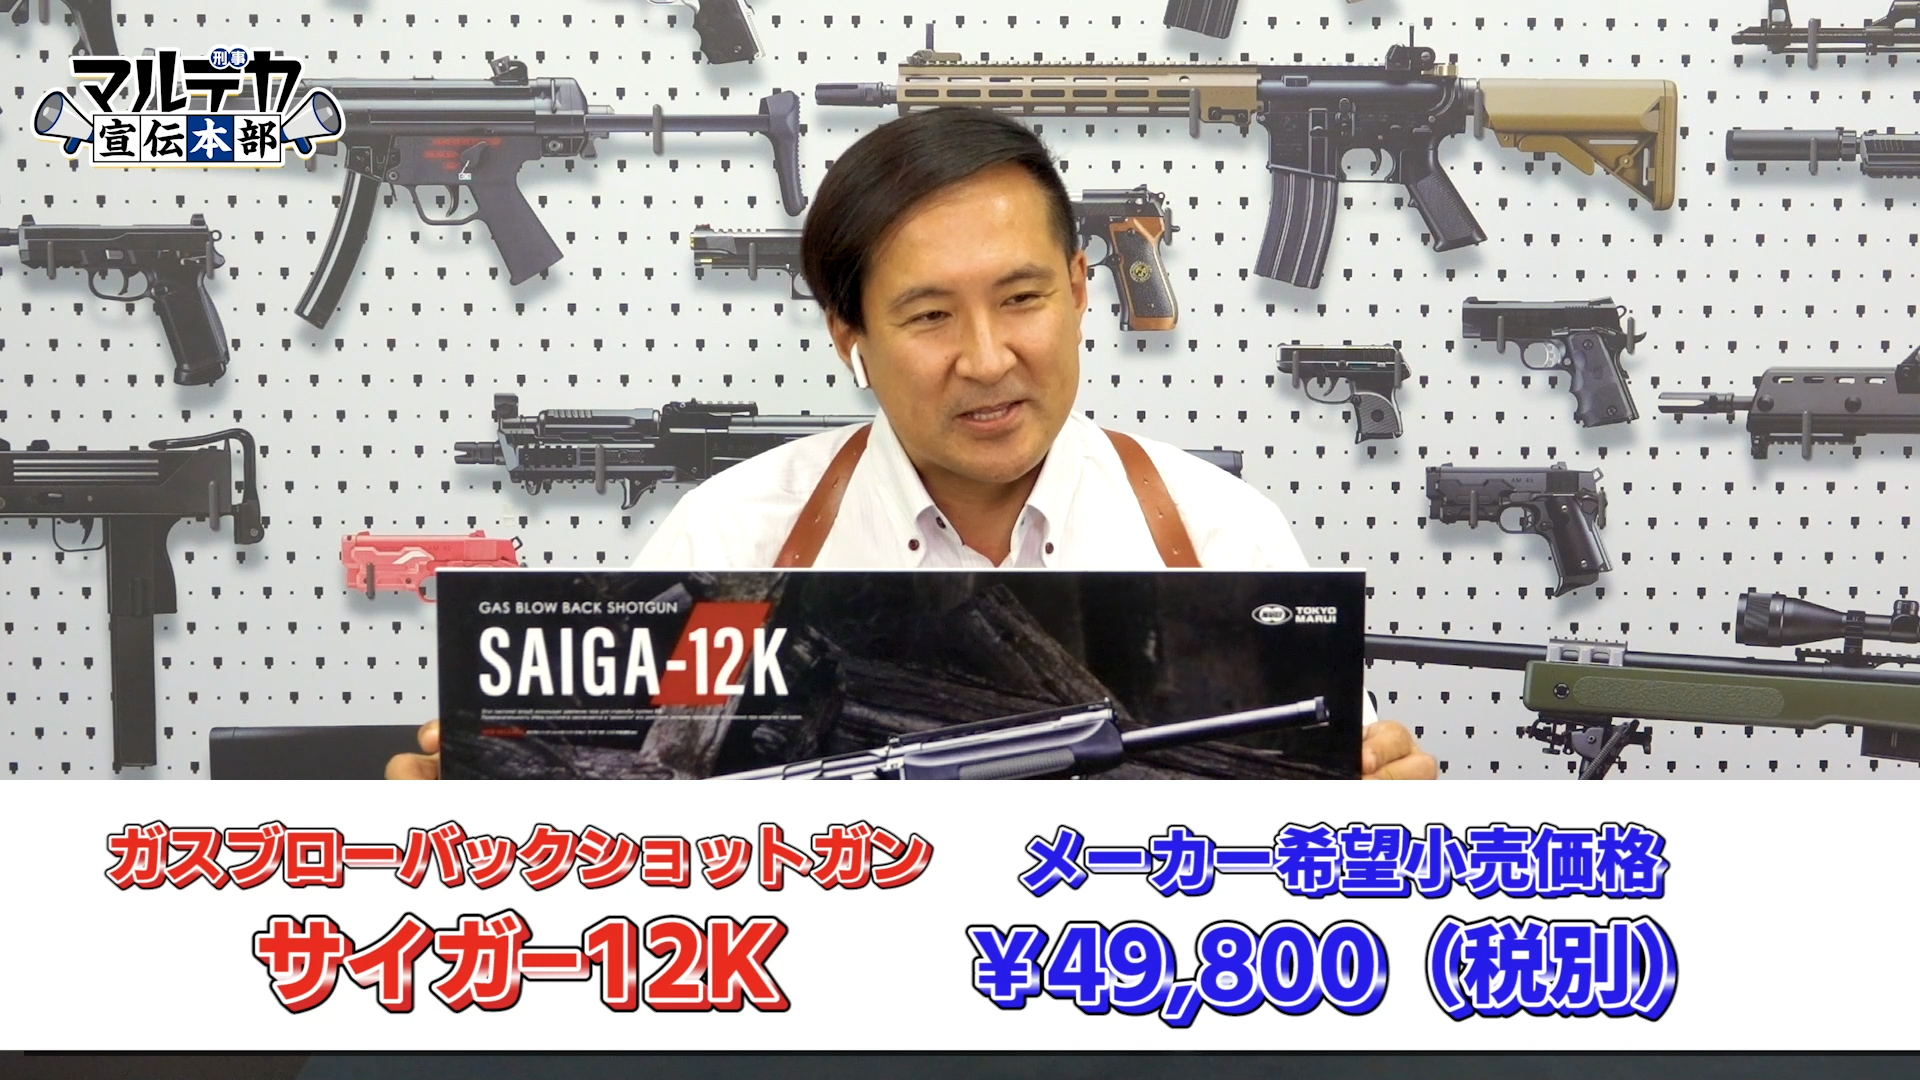 東京マルイ、「ガスブローバックショットガン SAIGA-12K」の価格を発表